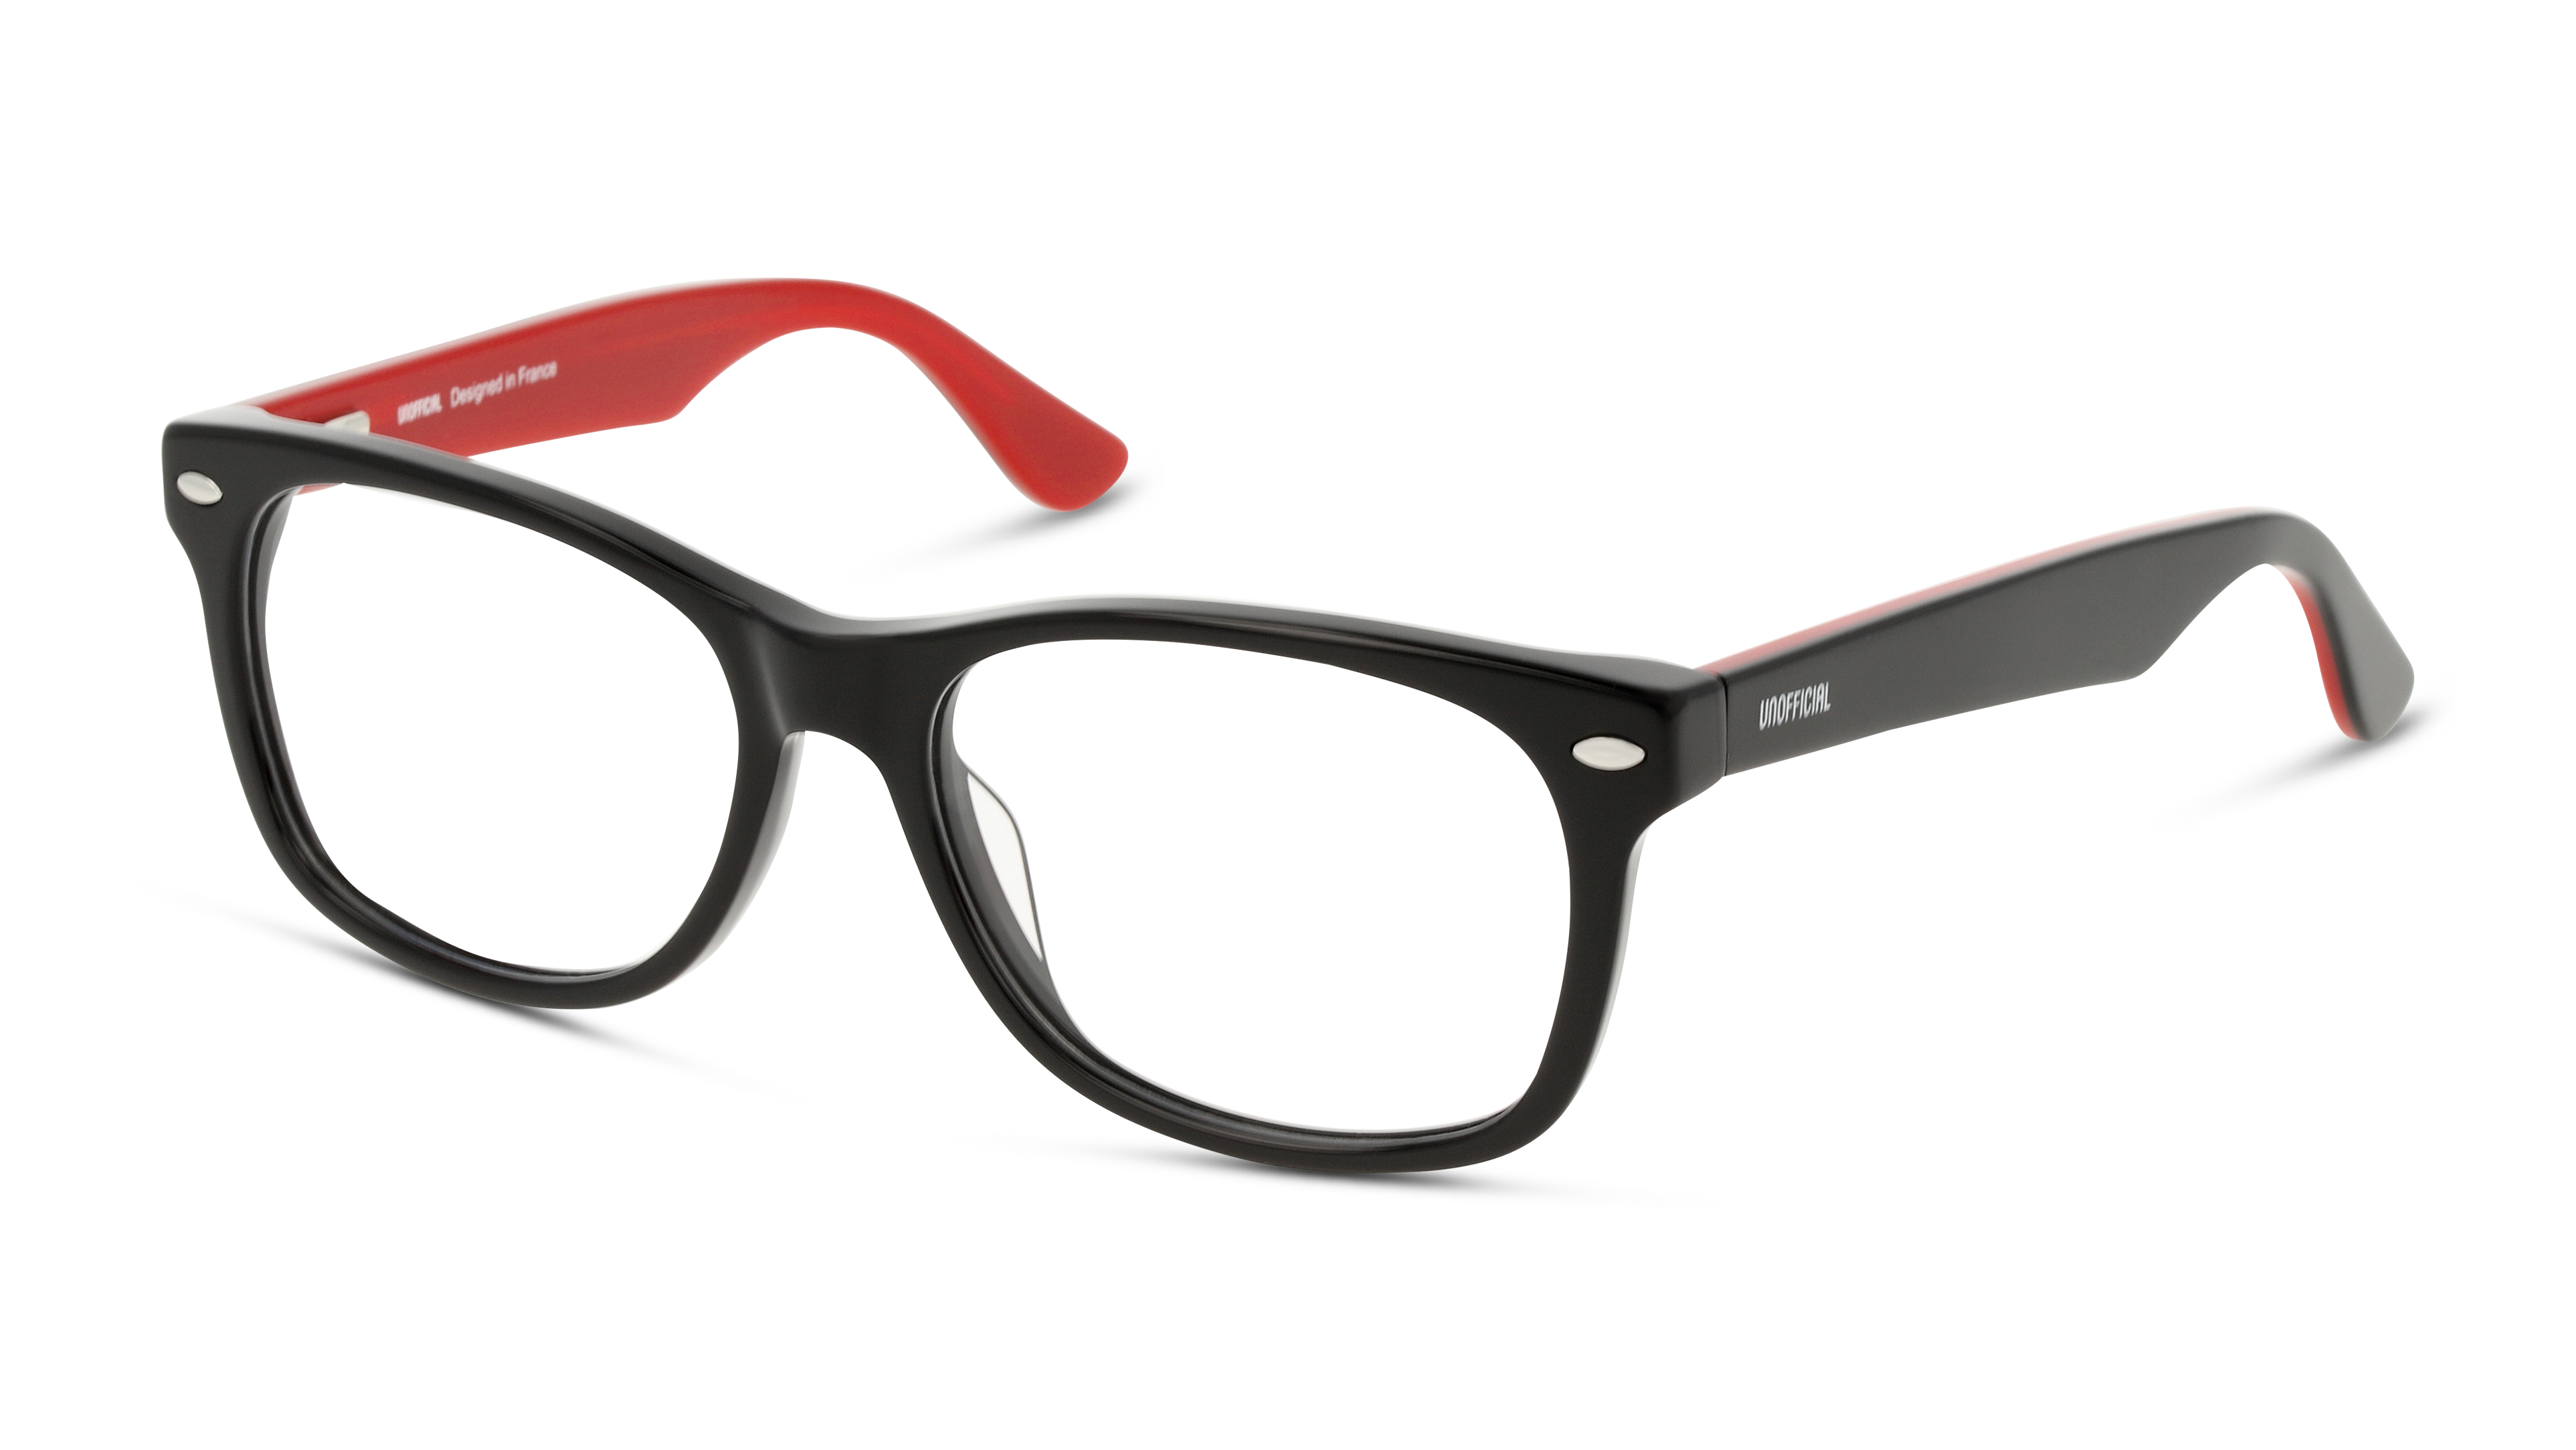 Angle_Left01 Unofficial UN OT0005 (BB00) Children's Glasses Transparent / Black